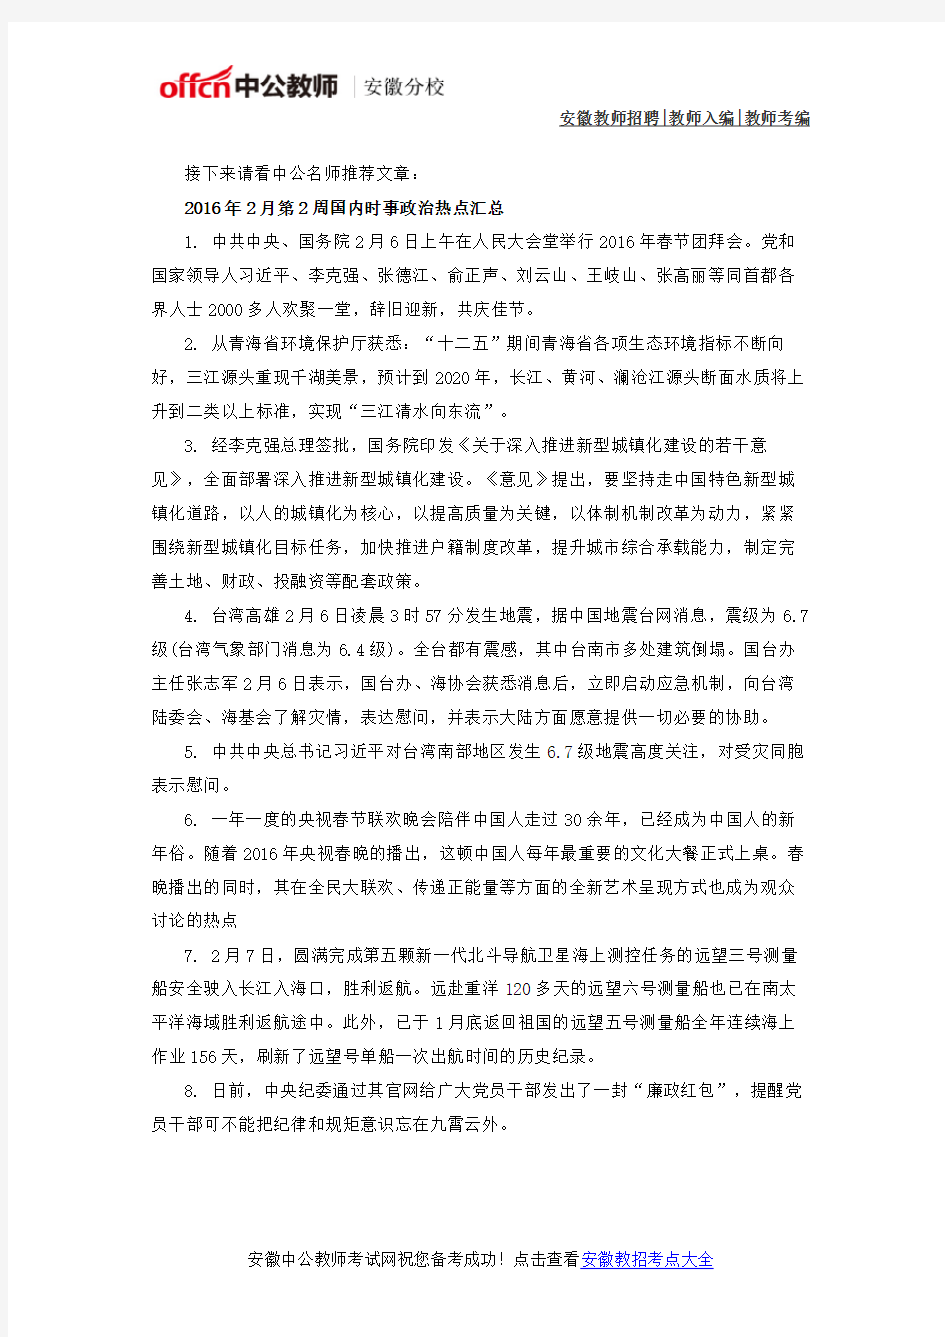 2016年安徽省滁州中小学教师考编考试公示及聘用